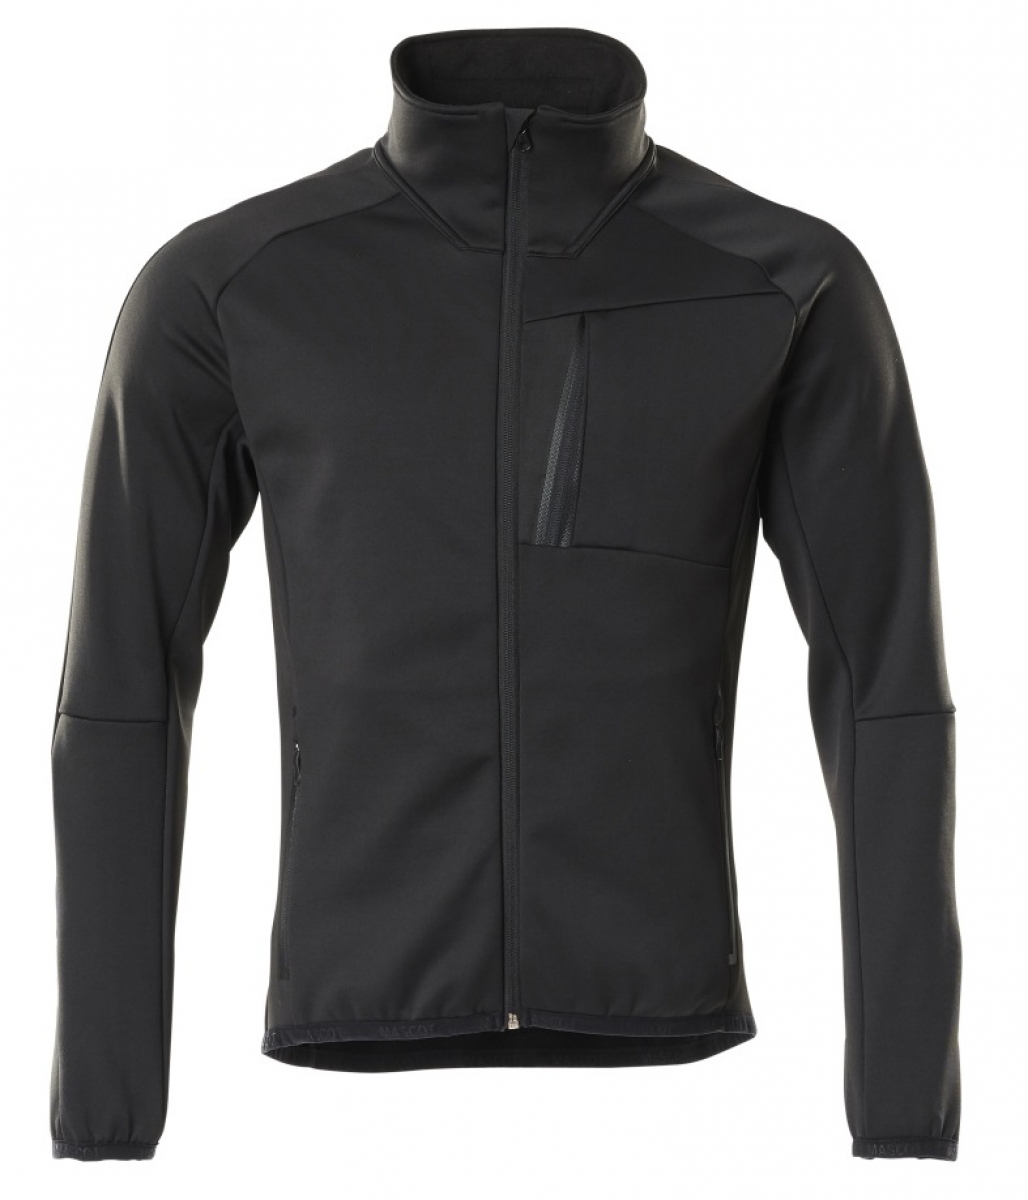 MASCOT-Workwear, Klteschutz, Fleecepullover mit Reiverschlu, 260 g/m, schwarz